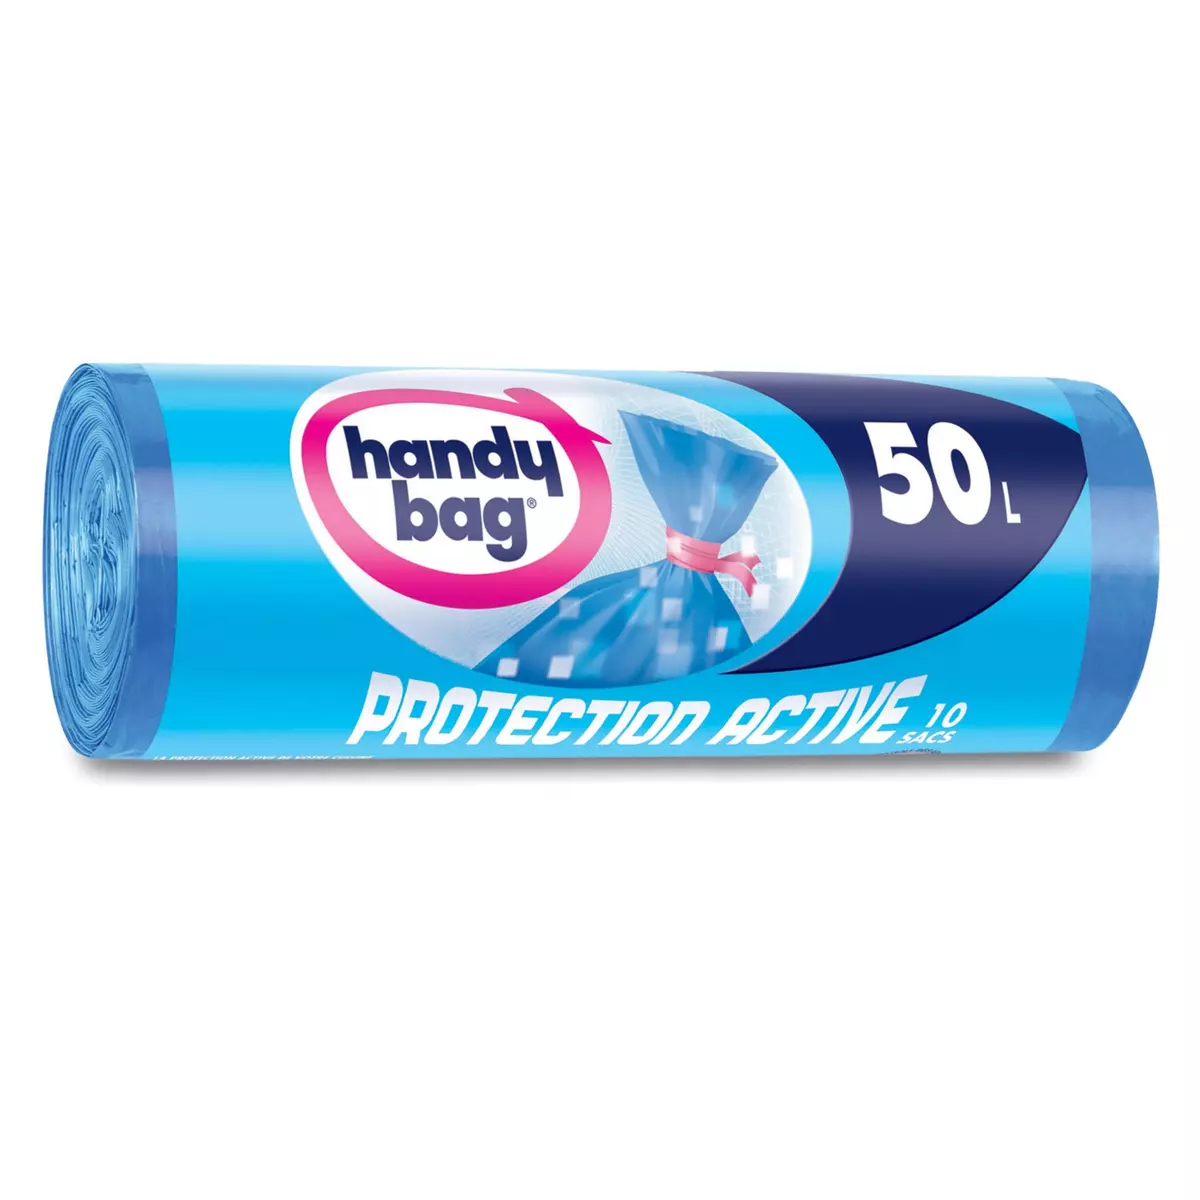 HANDY BAG Sacs poubelle protection active liens détachables 50l 10 sacs